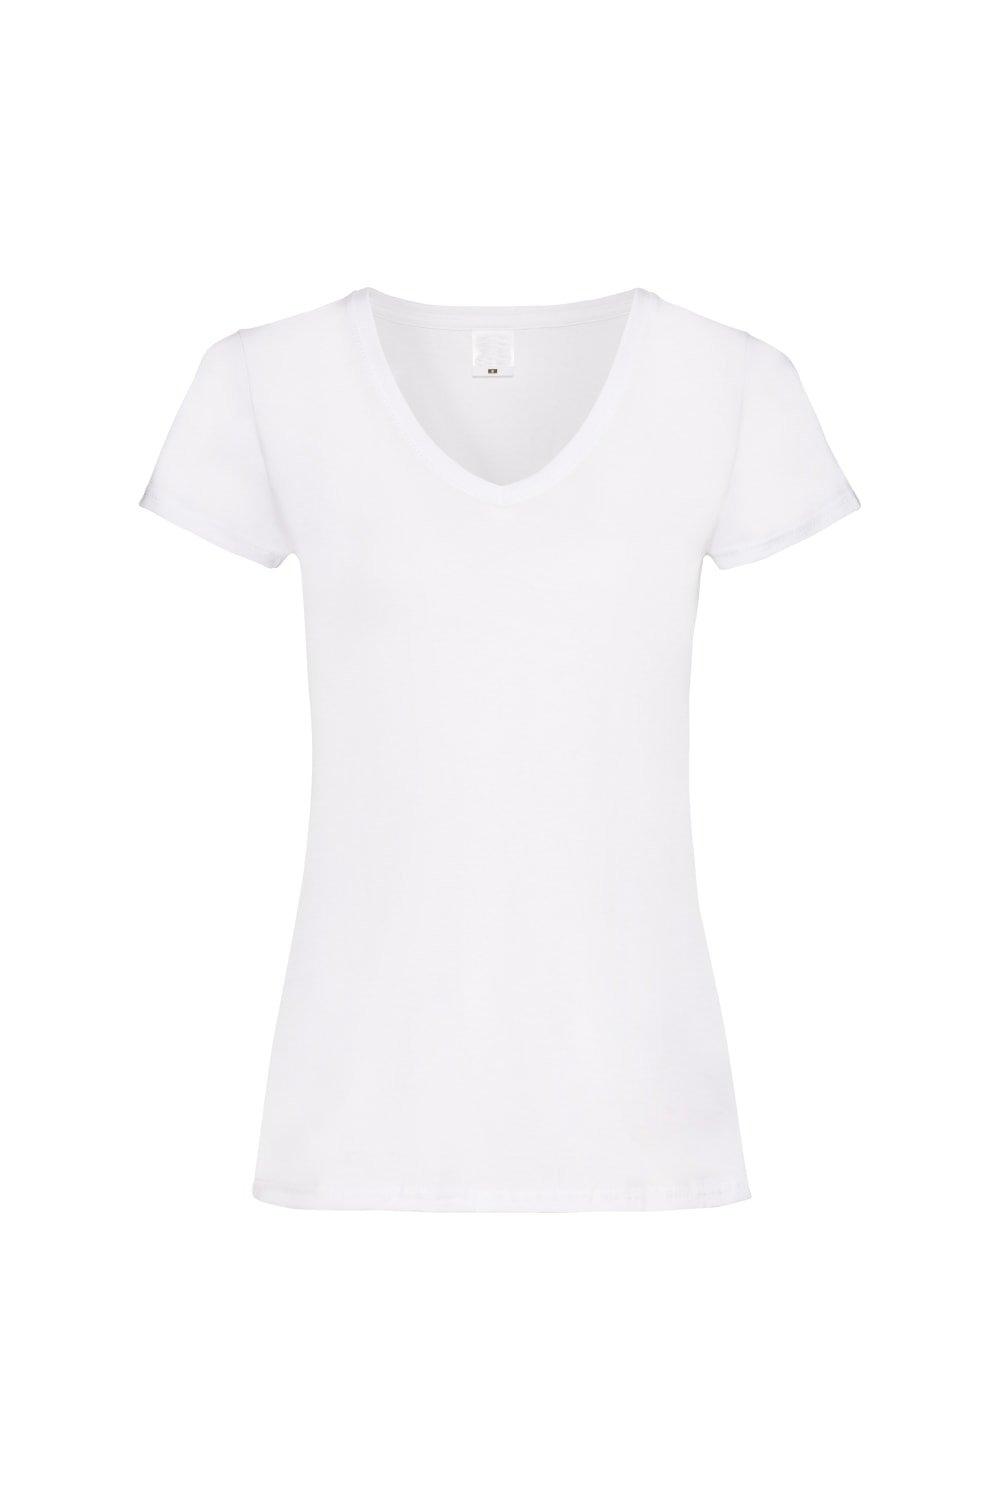 Повседневная футболка Value с V-образным вырезом и короткими рукавами Universal Textiles, белый футболка женская mia серый меланж размер xl